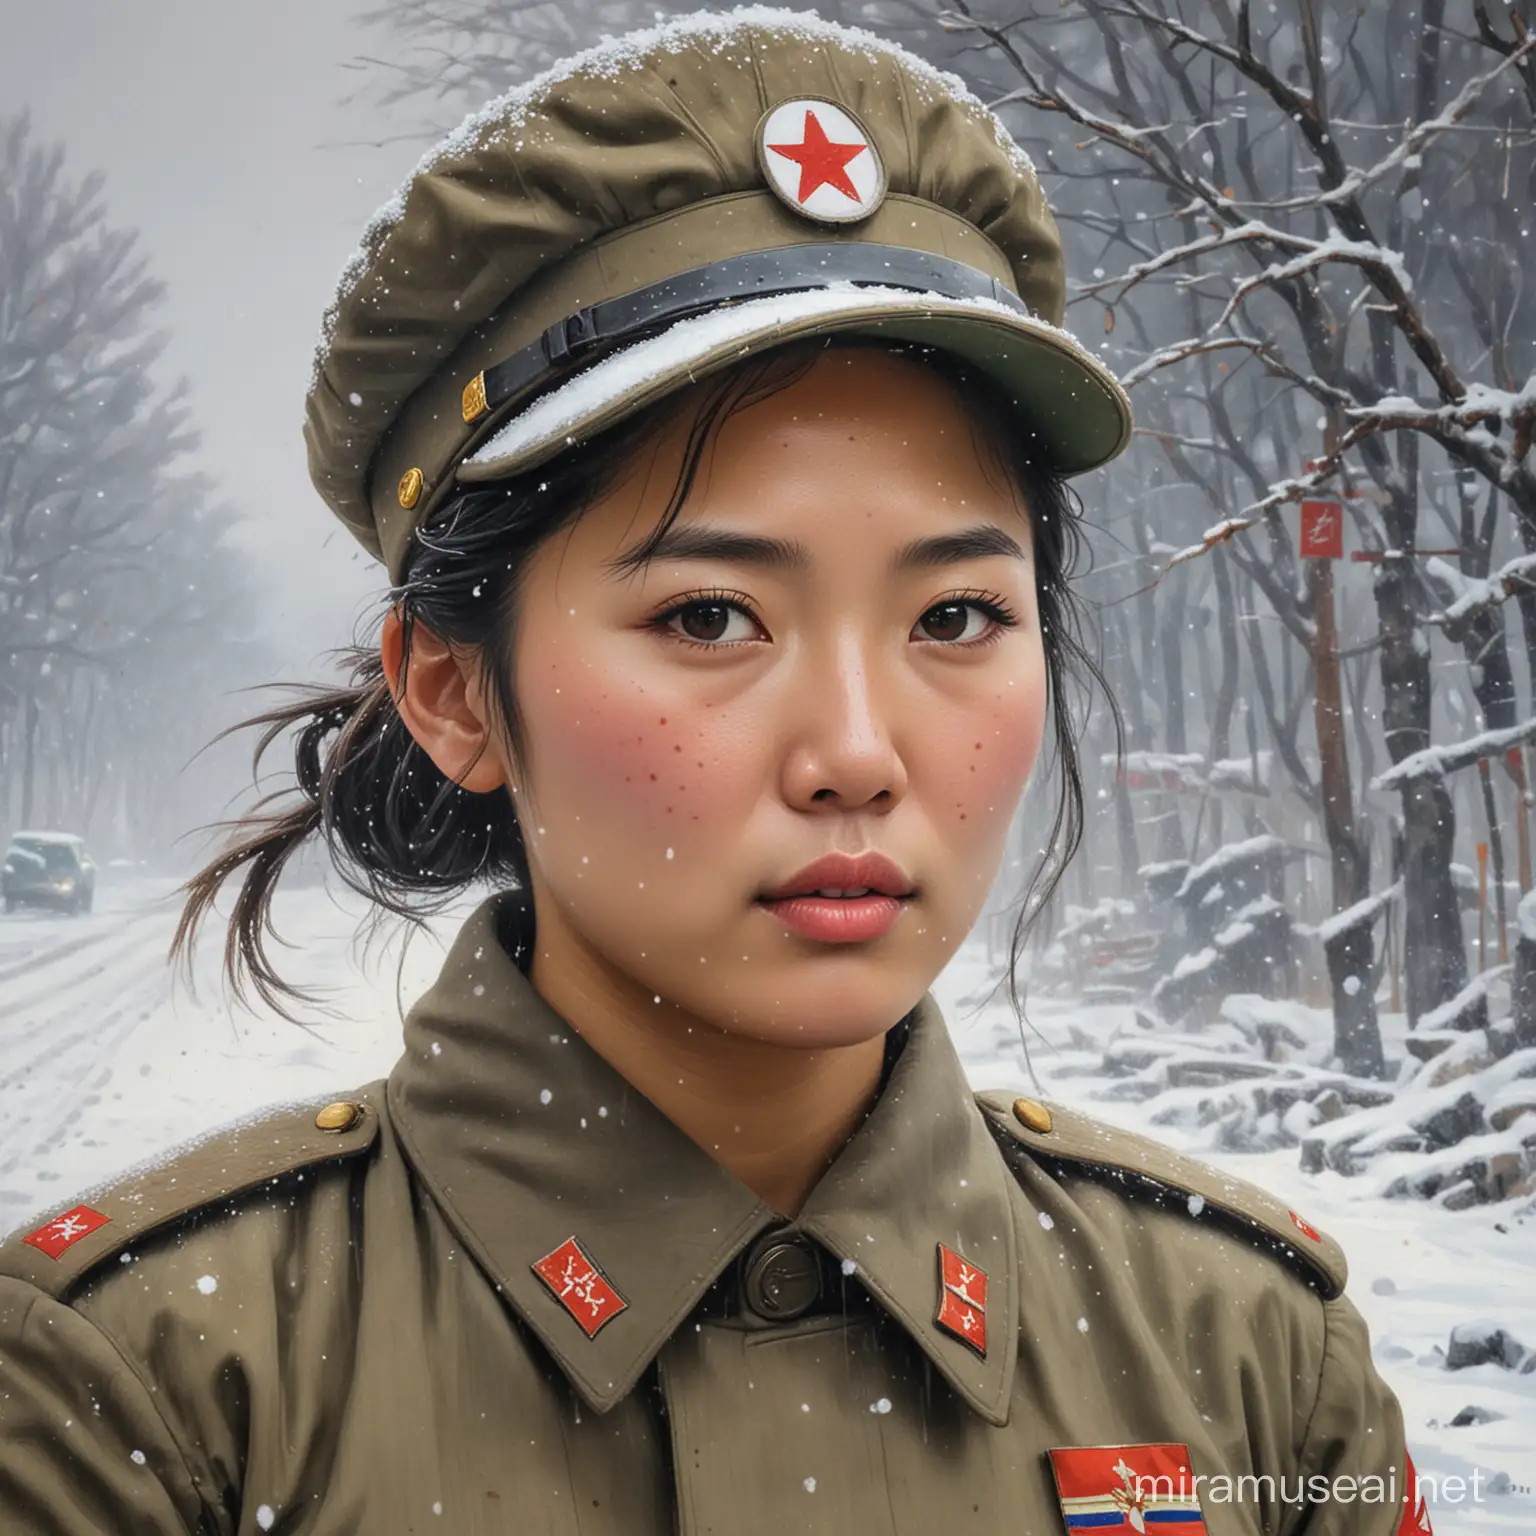 Peinture impressionniste d'une femme soldat nord coréenne prise dans la tempête de neige 